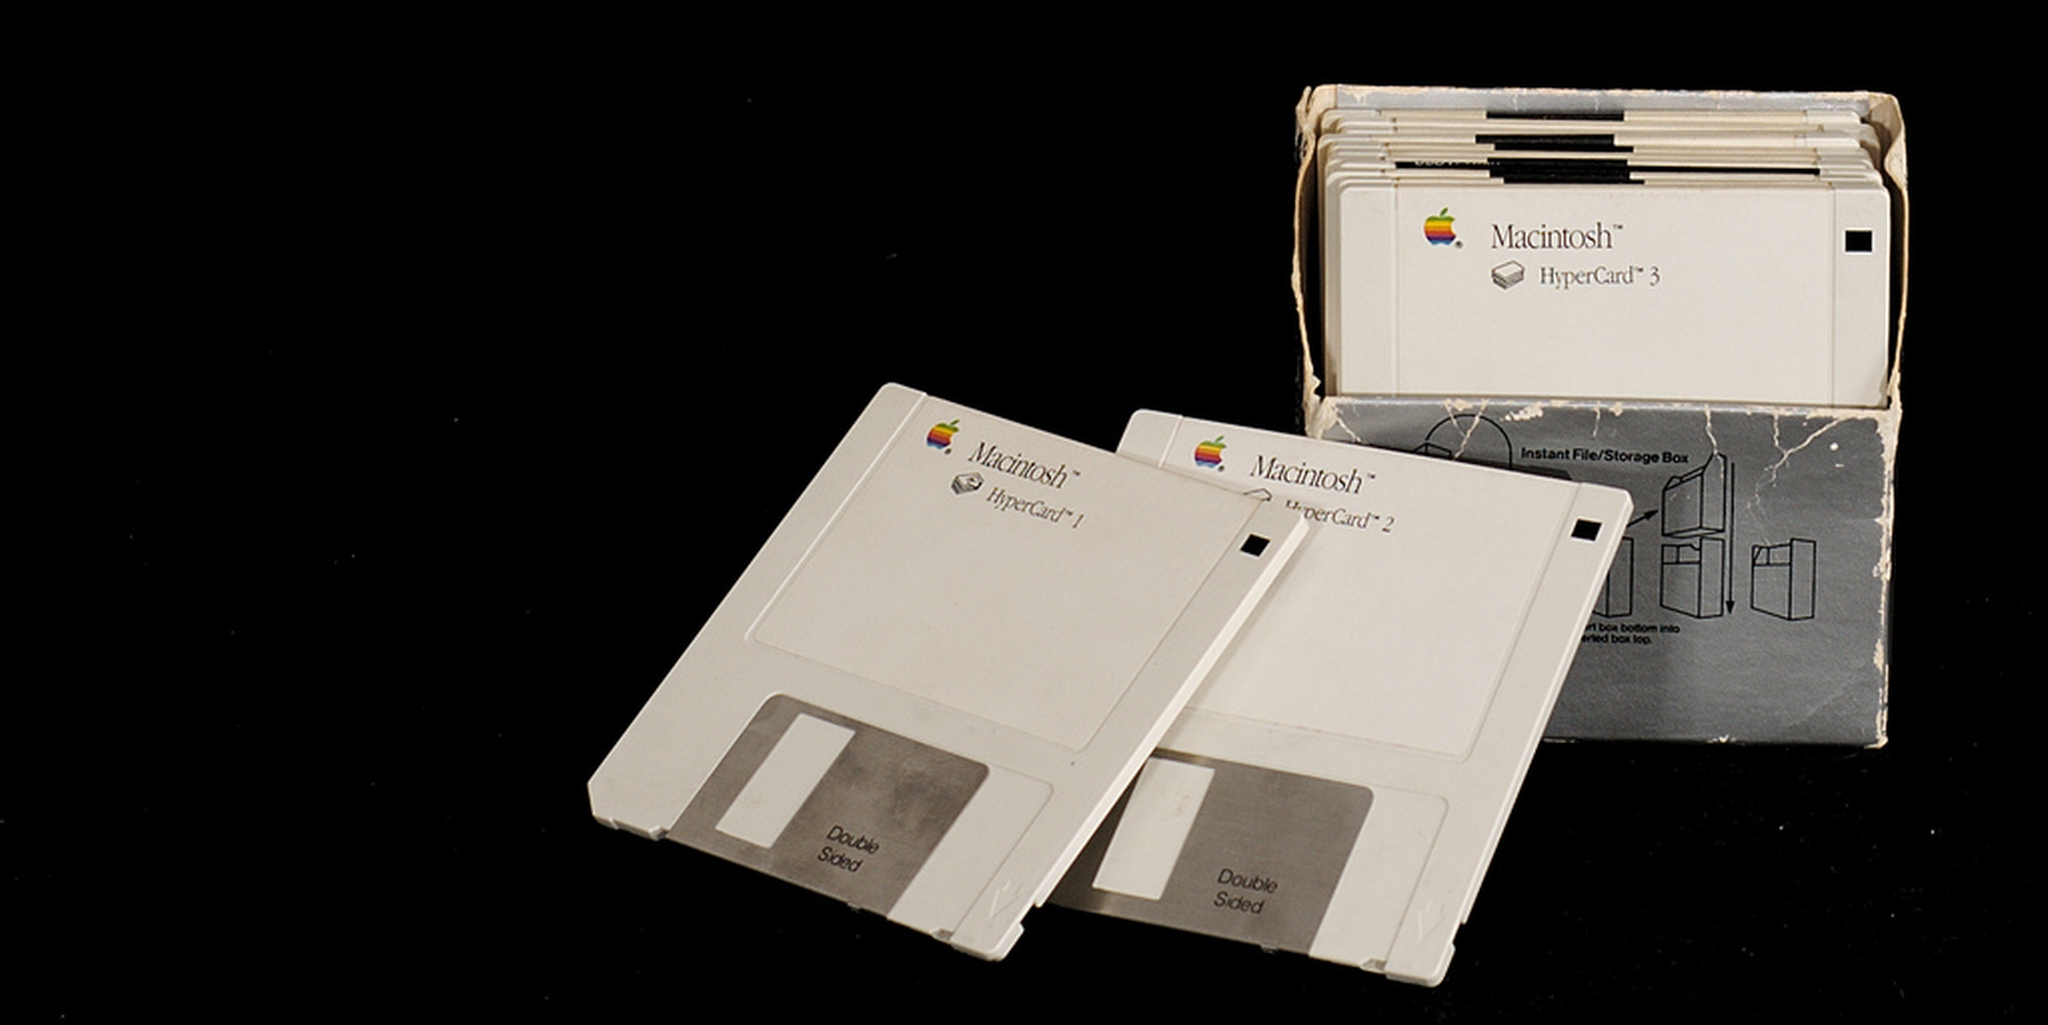    HyperCard